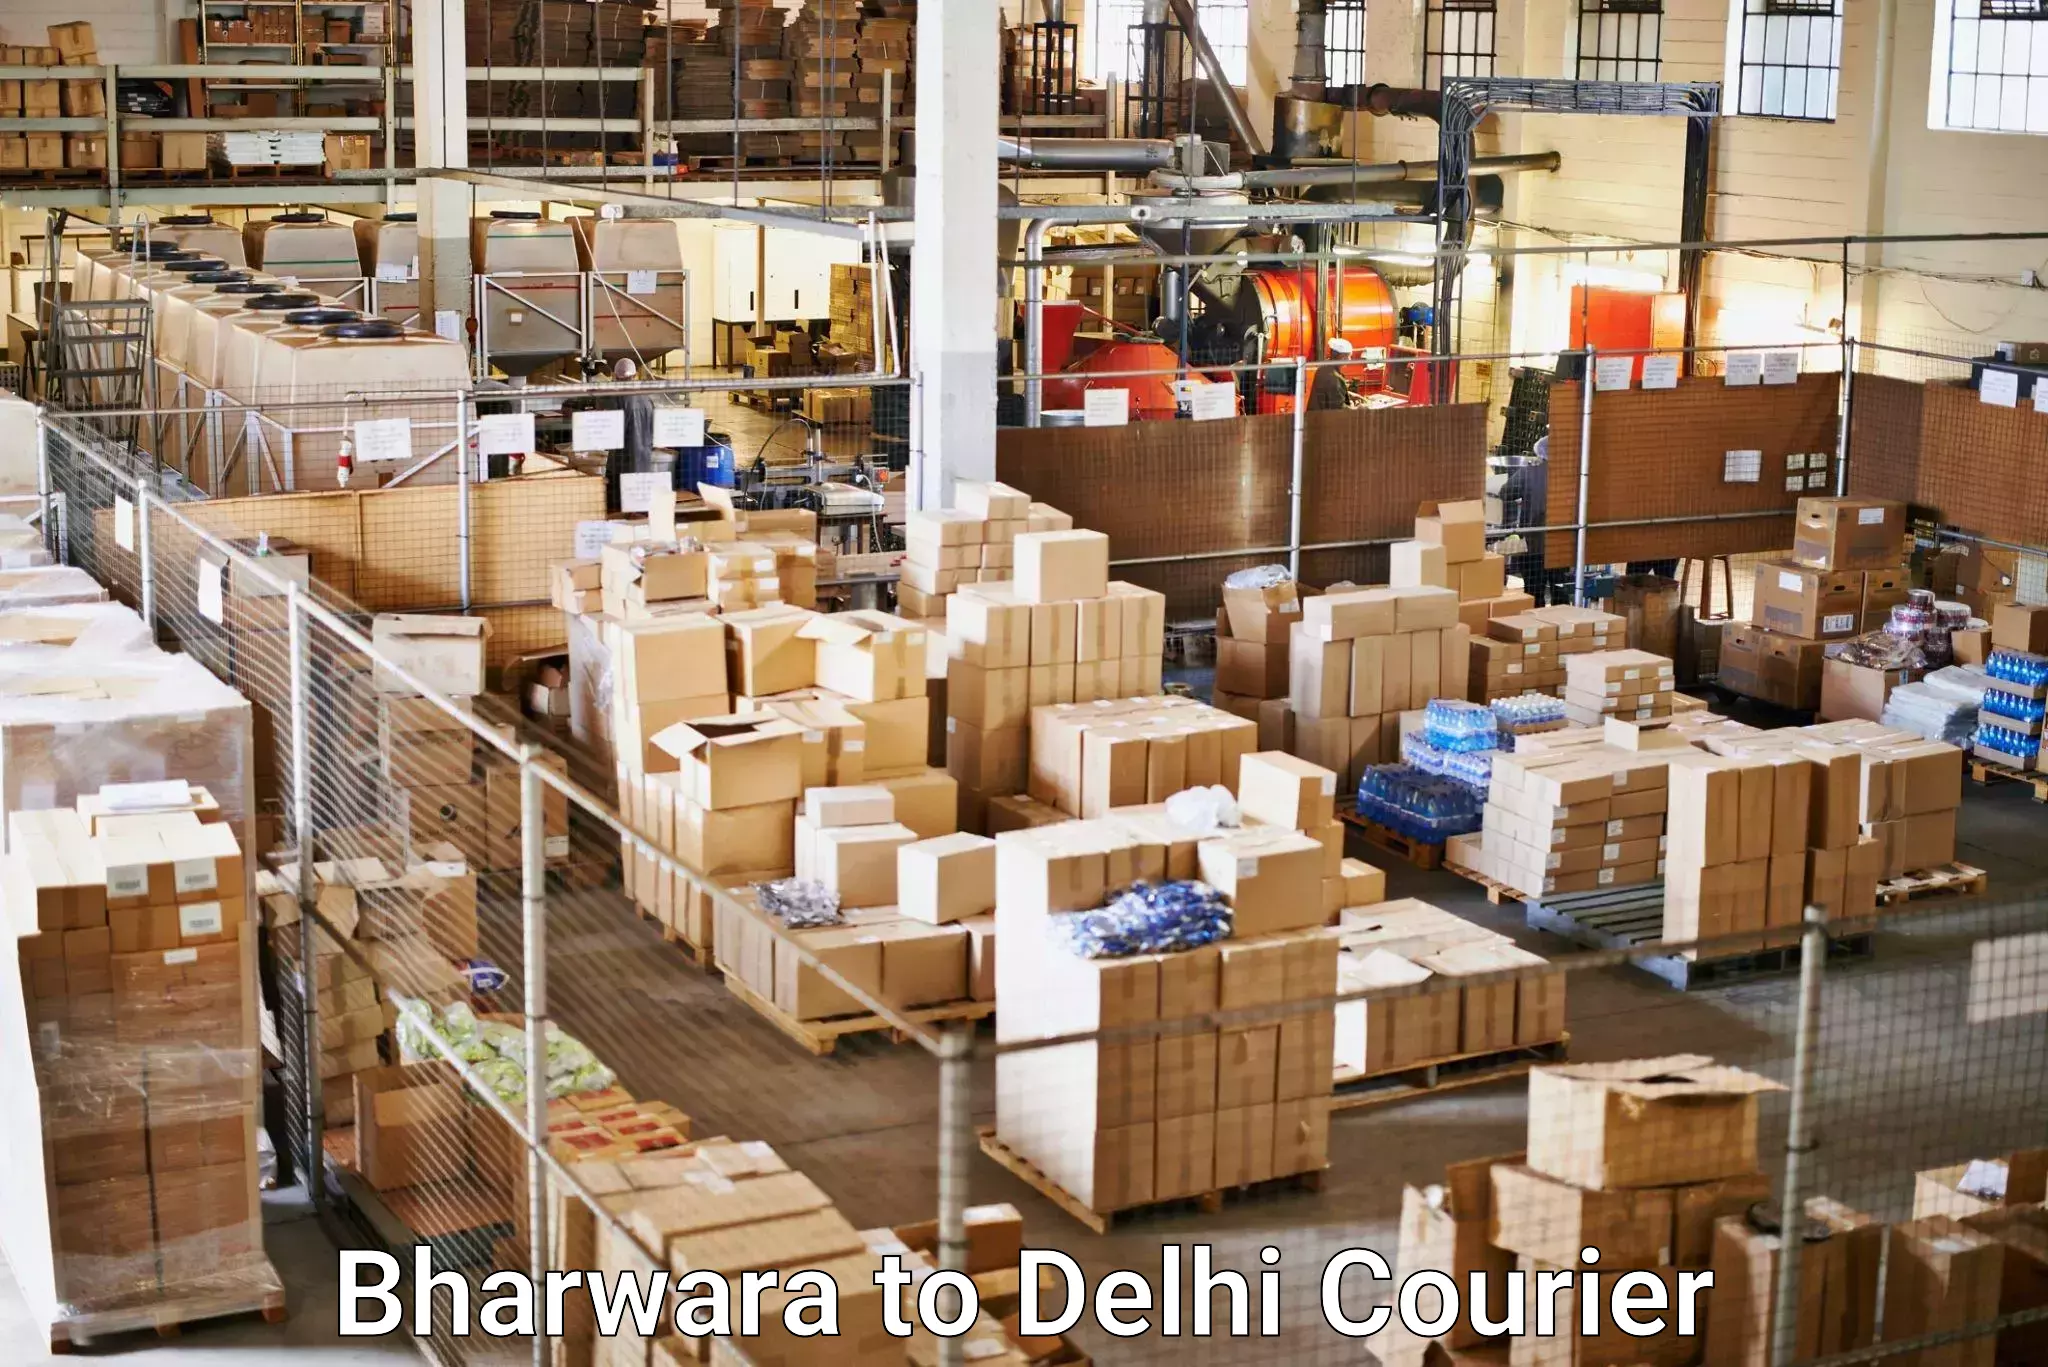 Courier service comparison in Bharwara to Guru Gobind Singh Indraprastha University New Delhi